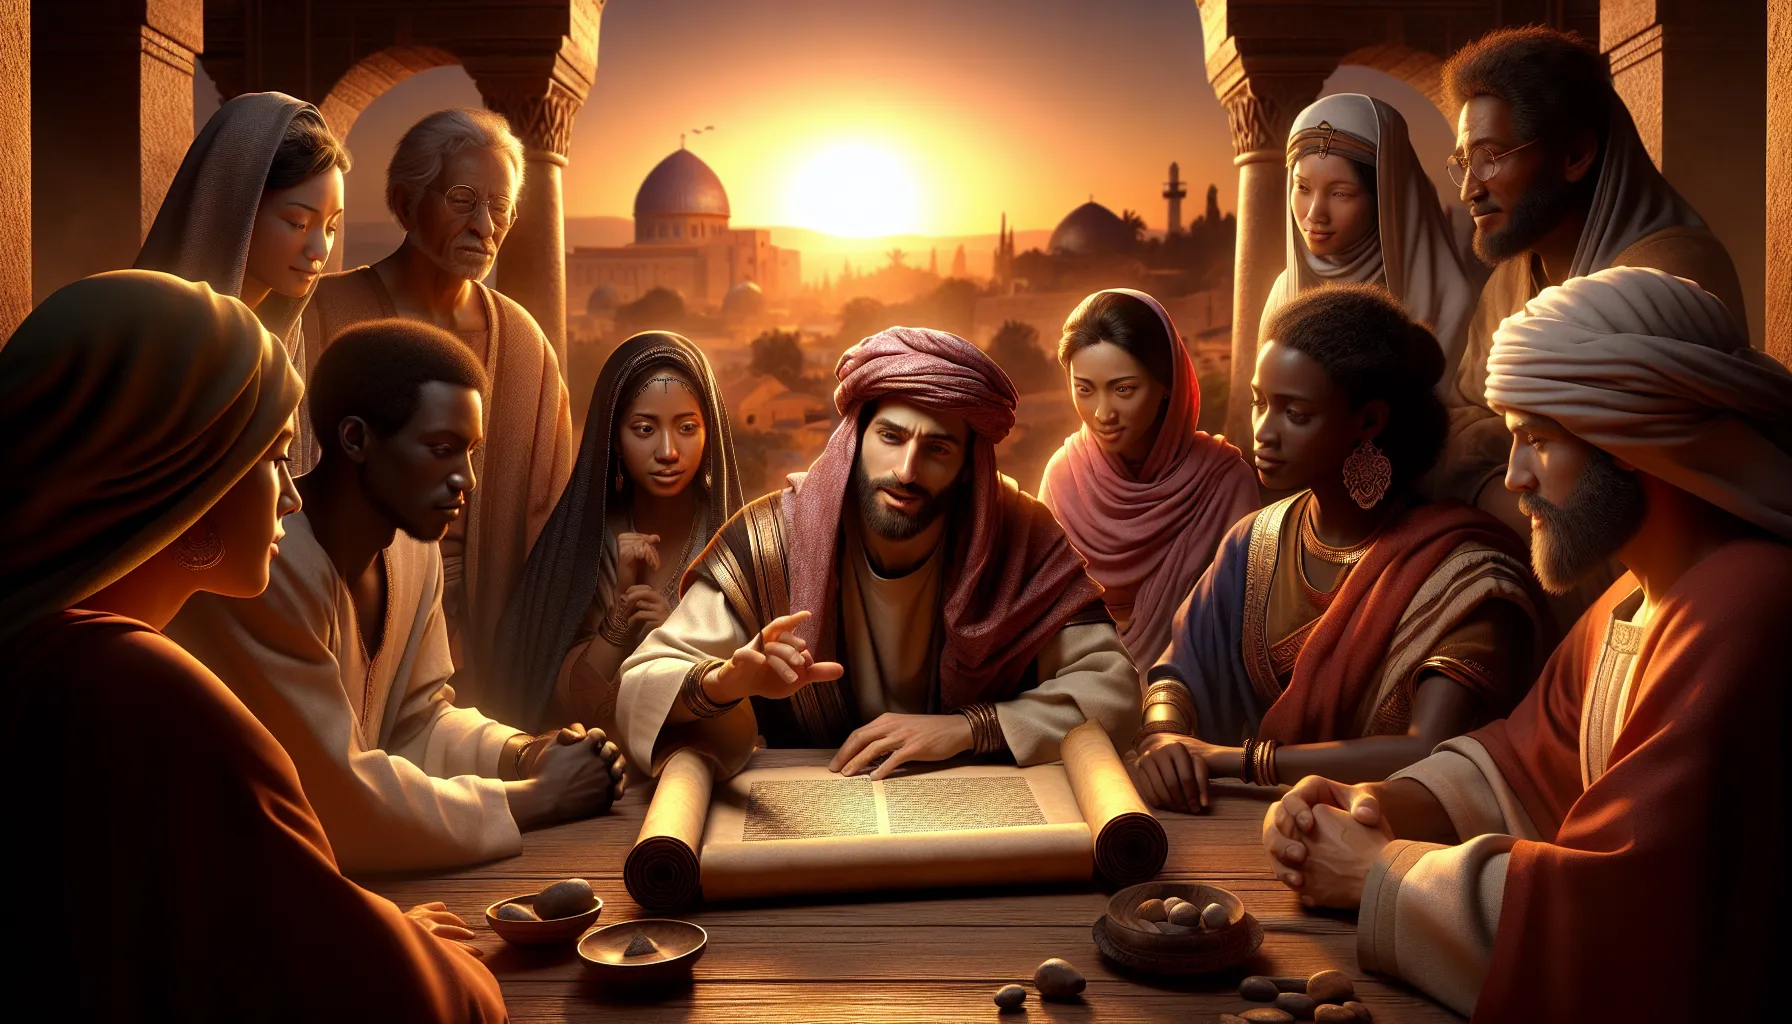 Imagen que representa el tema del artículo sobre las Lecciones de liderazgo tomadas de la figura de Nehemías en la Biblia'